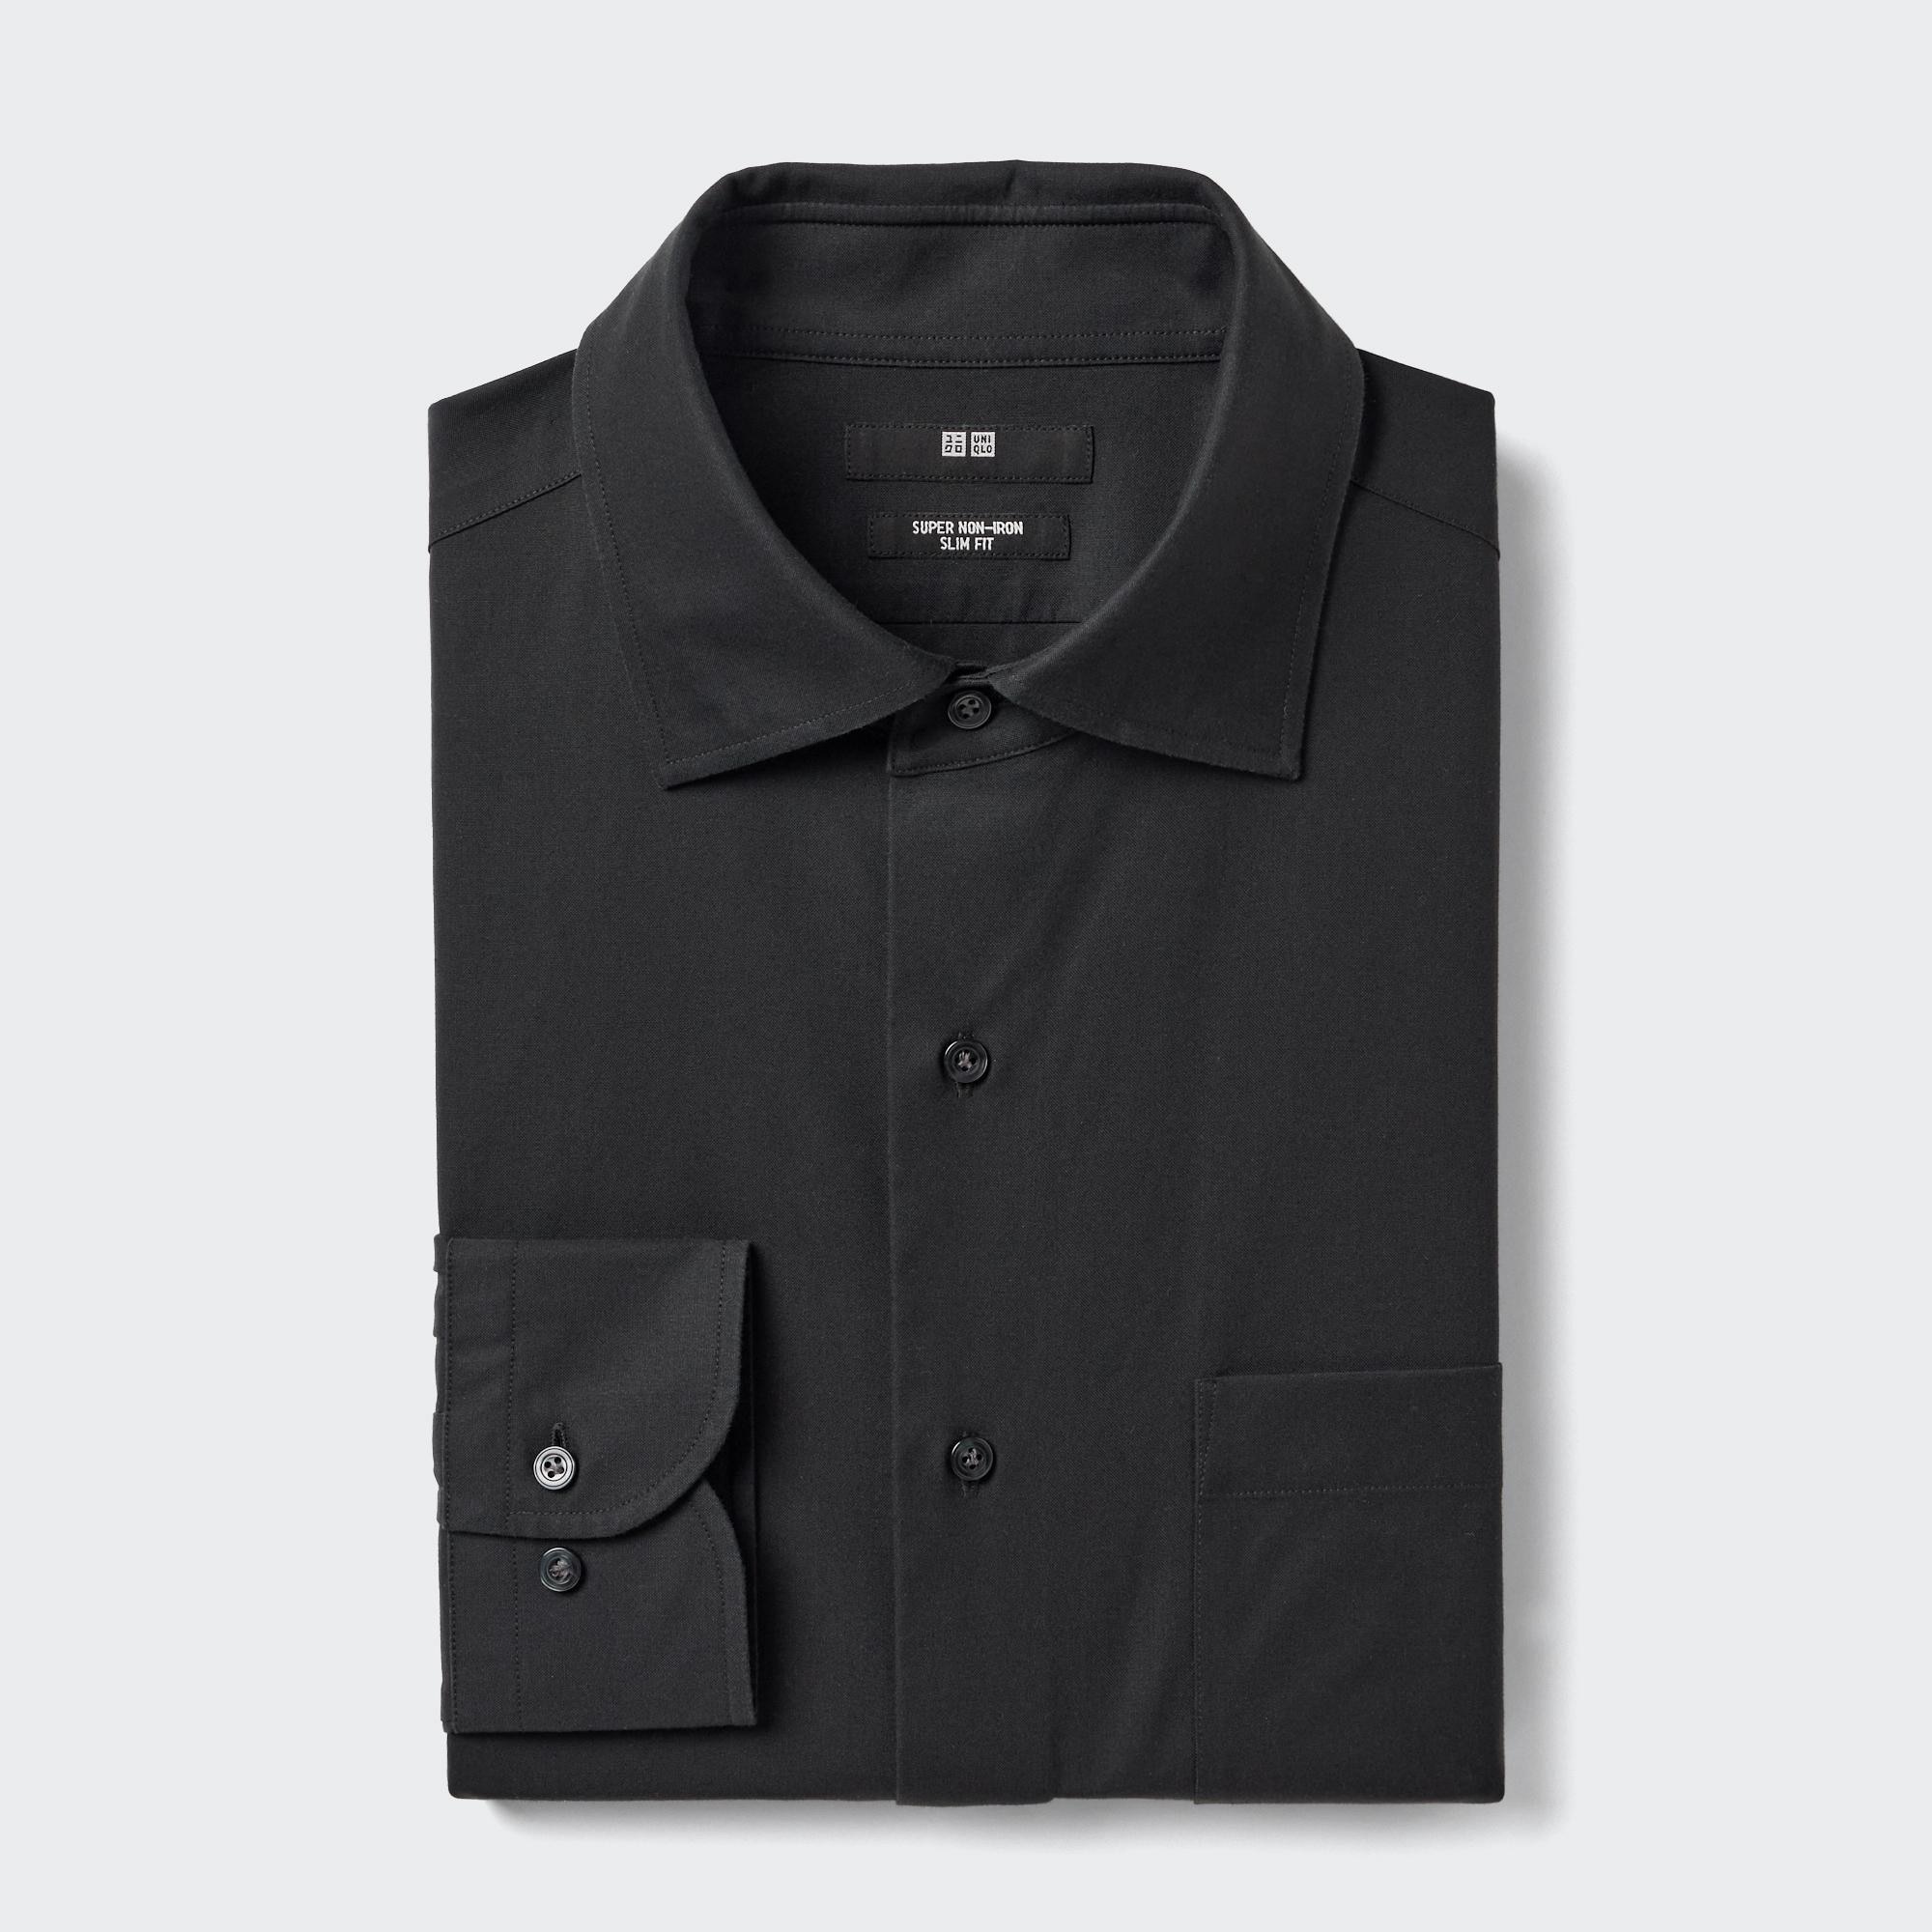 Yシャツ【新品】UNIQLO ボタンダウンシャツ4点セット　Lサイズ